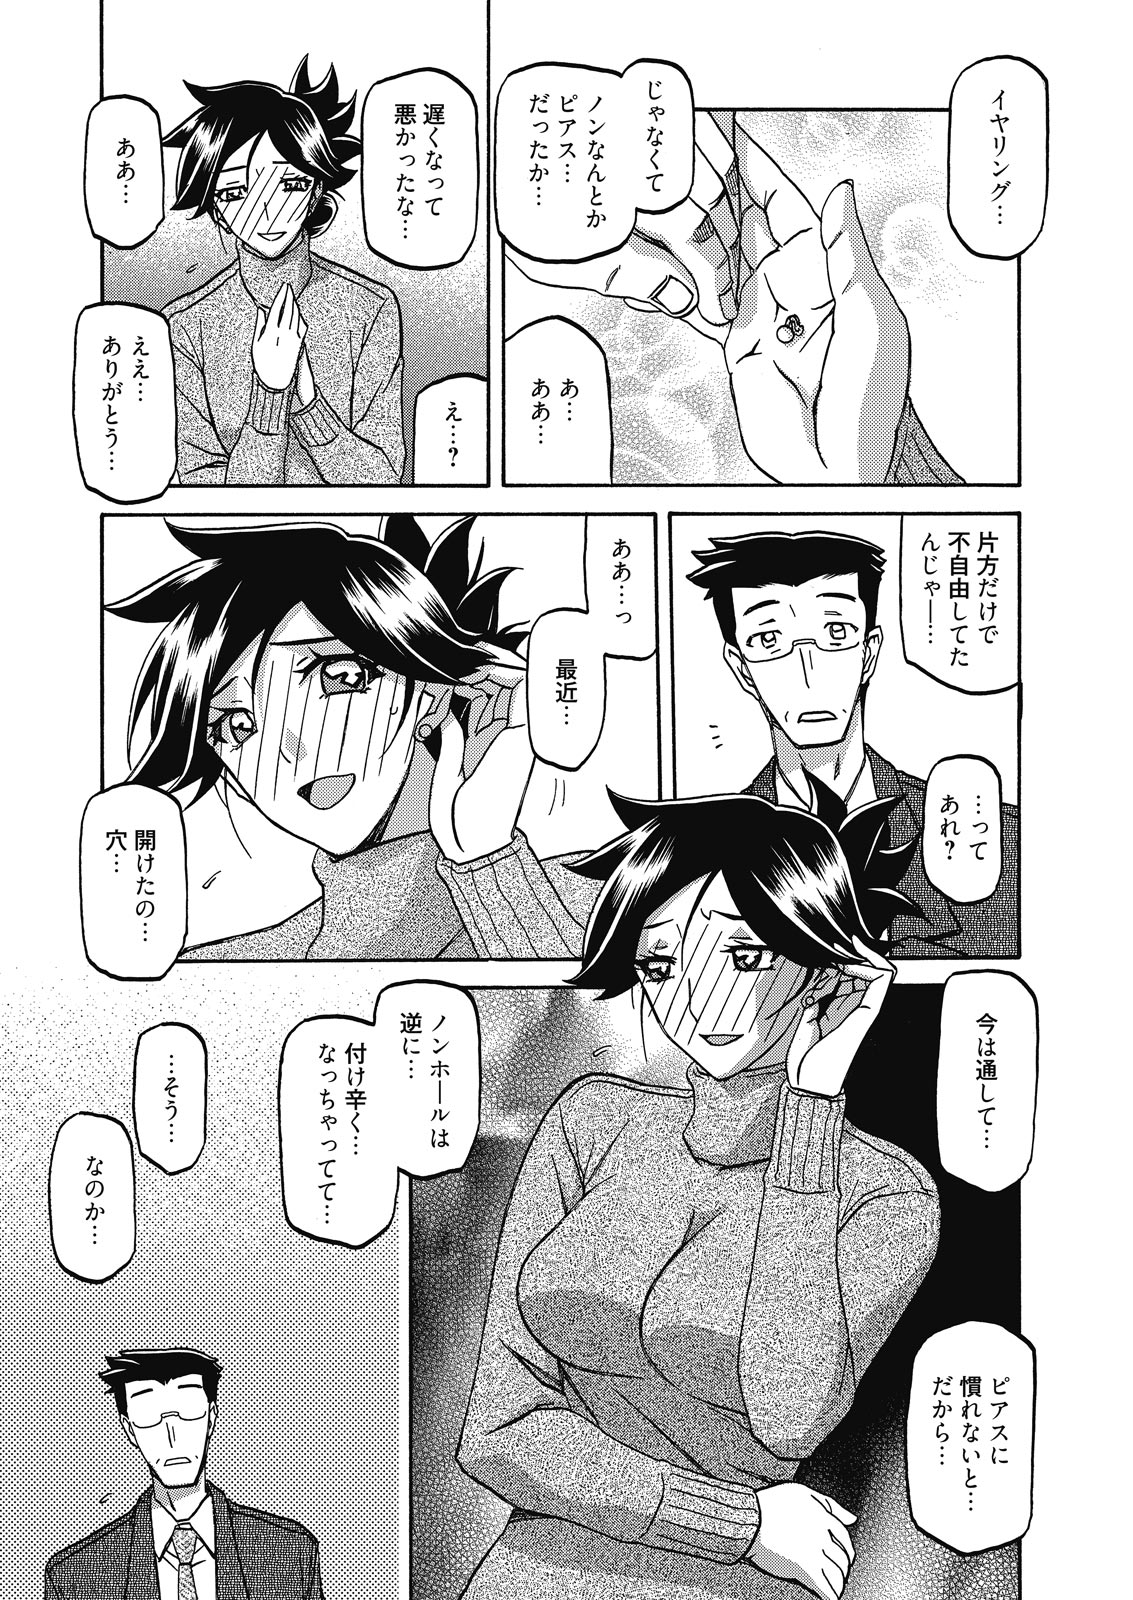 web 漫画ばんがいち Vol.7